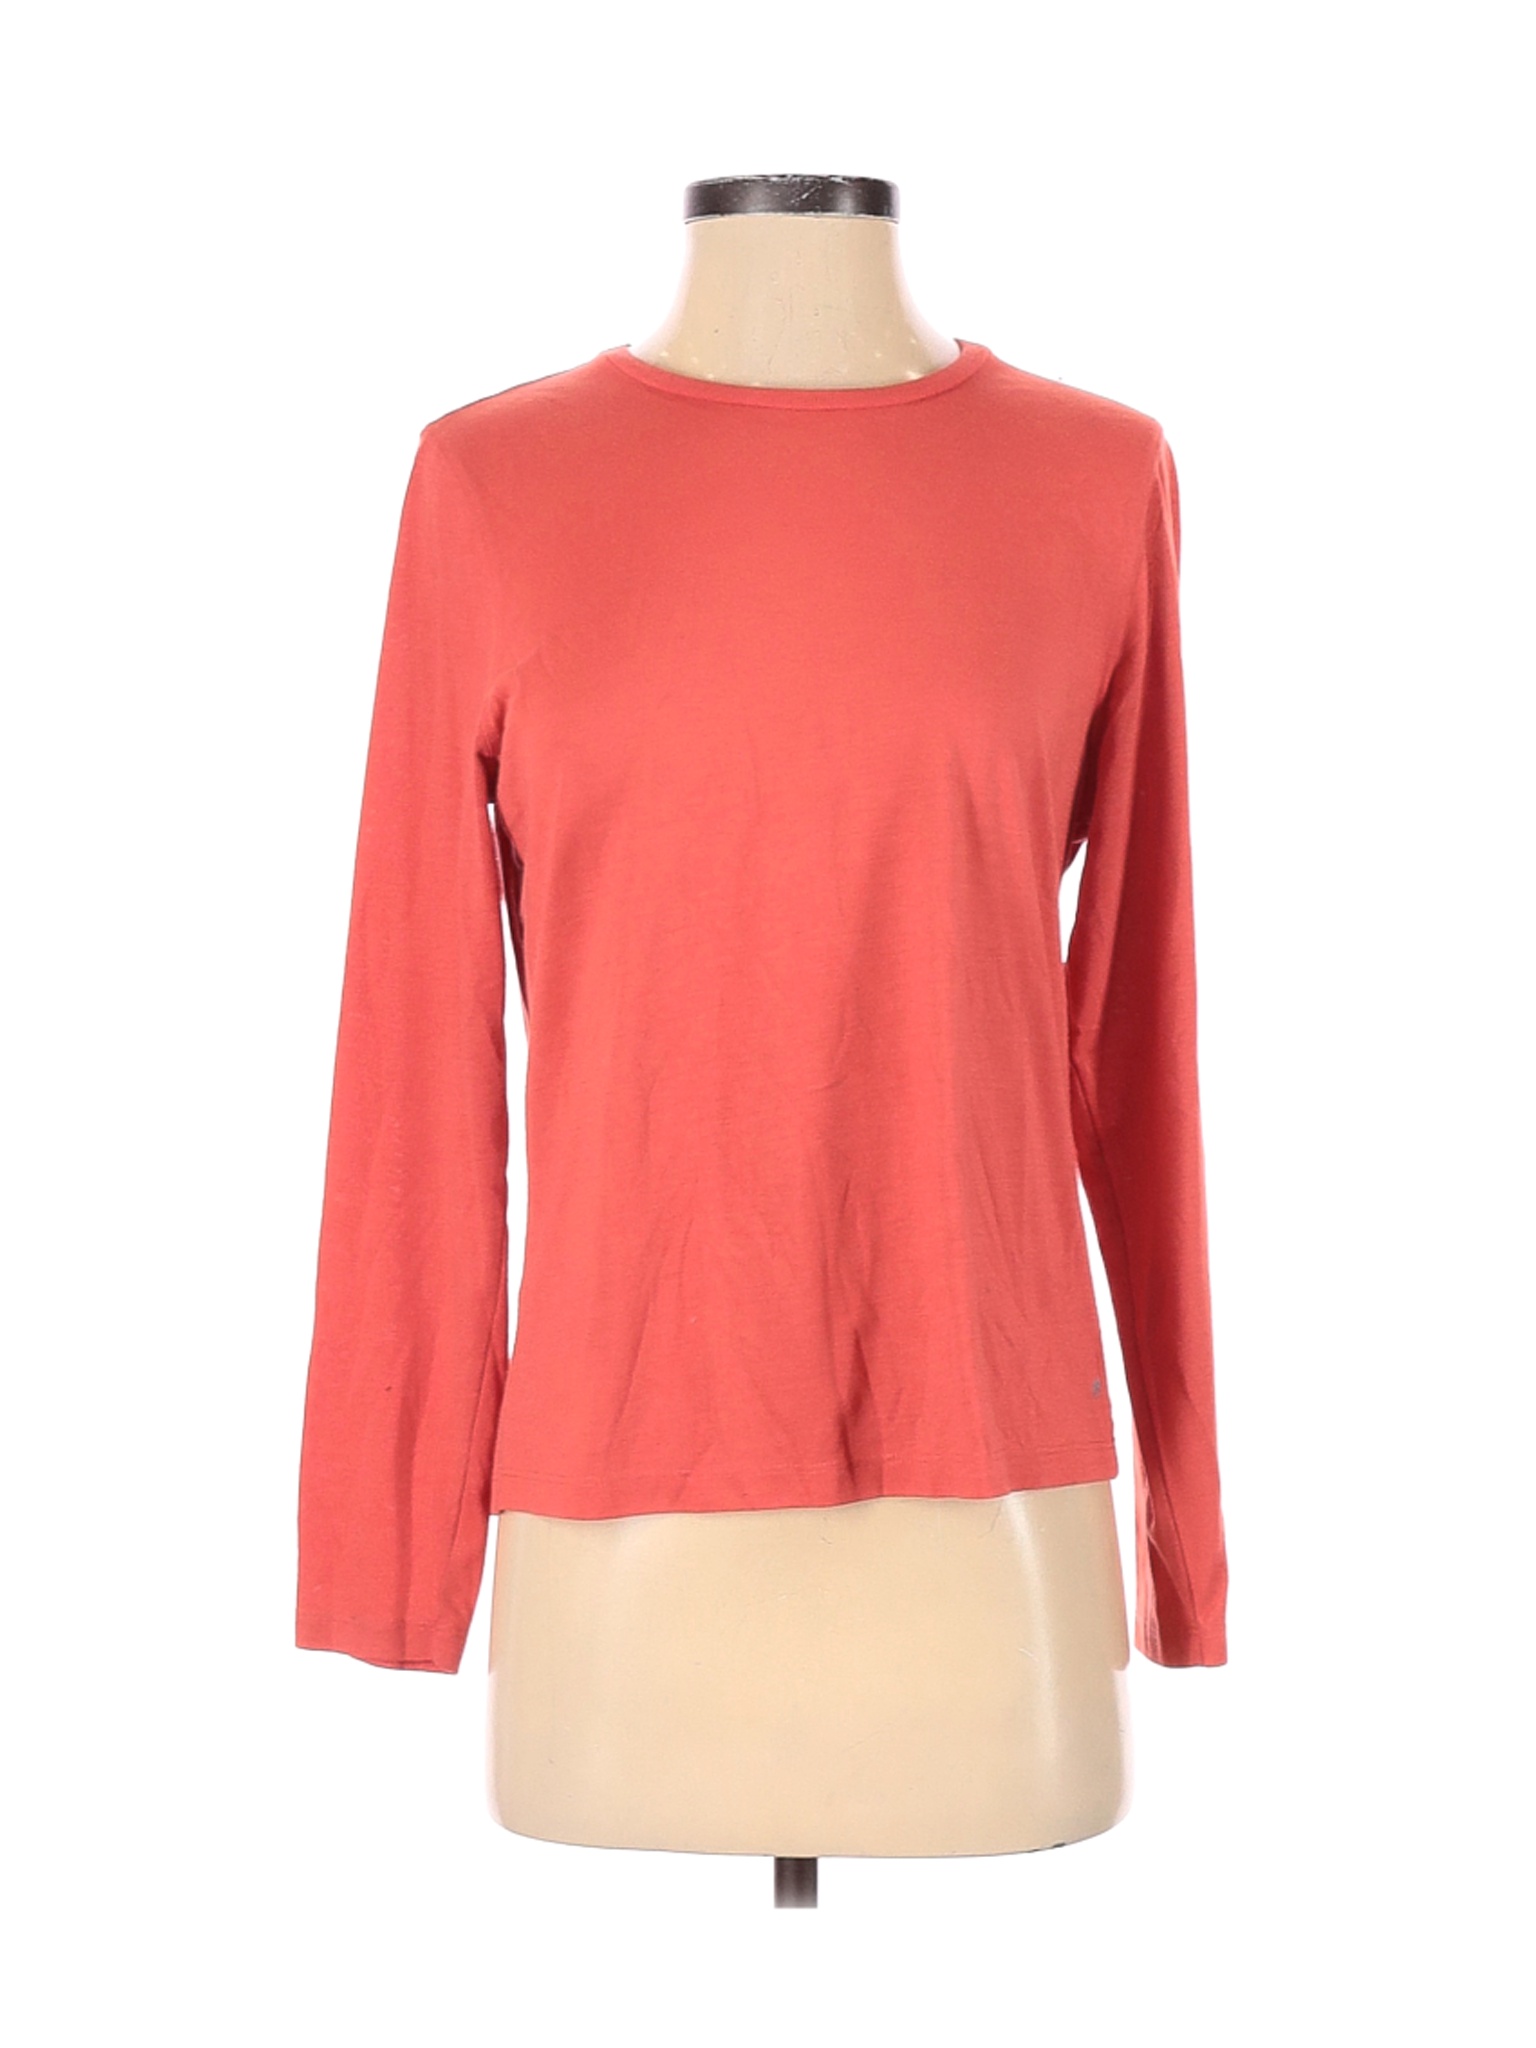 L.L.Bean Women Pink Long Sleeve T-Shirt S | eBay